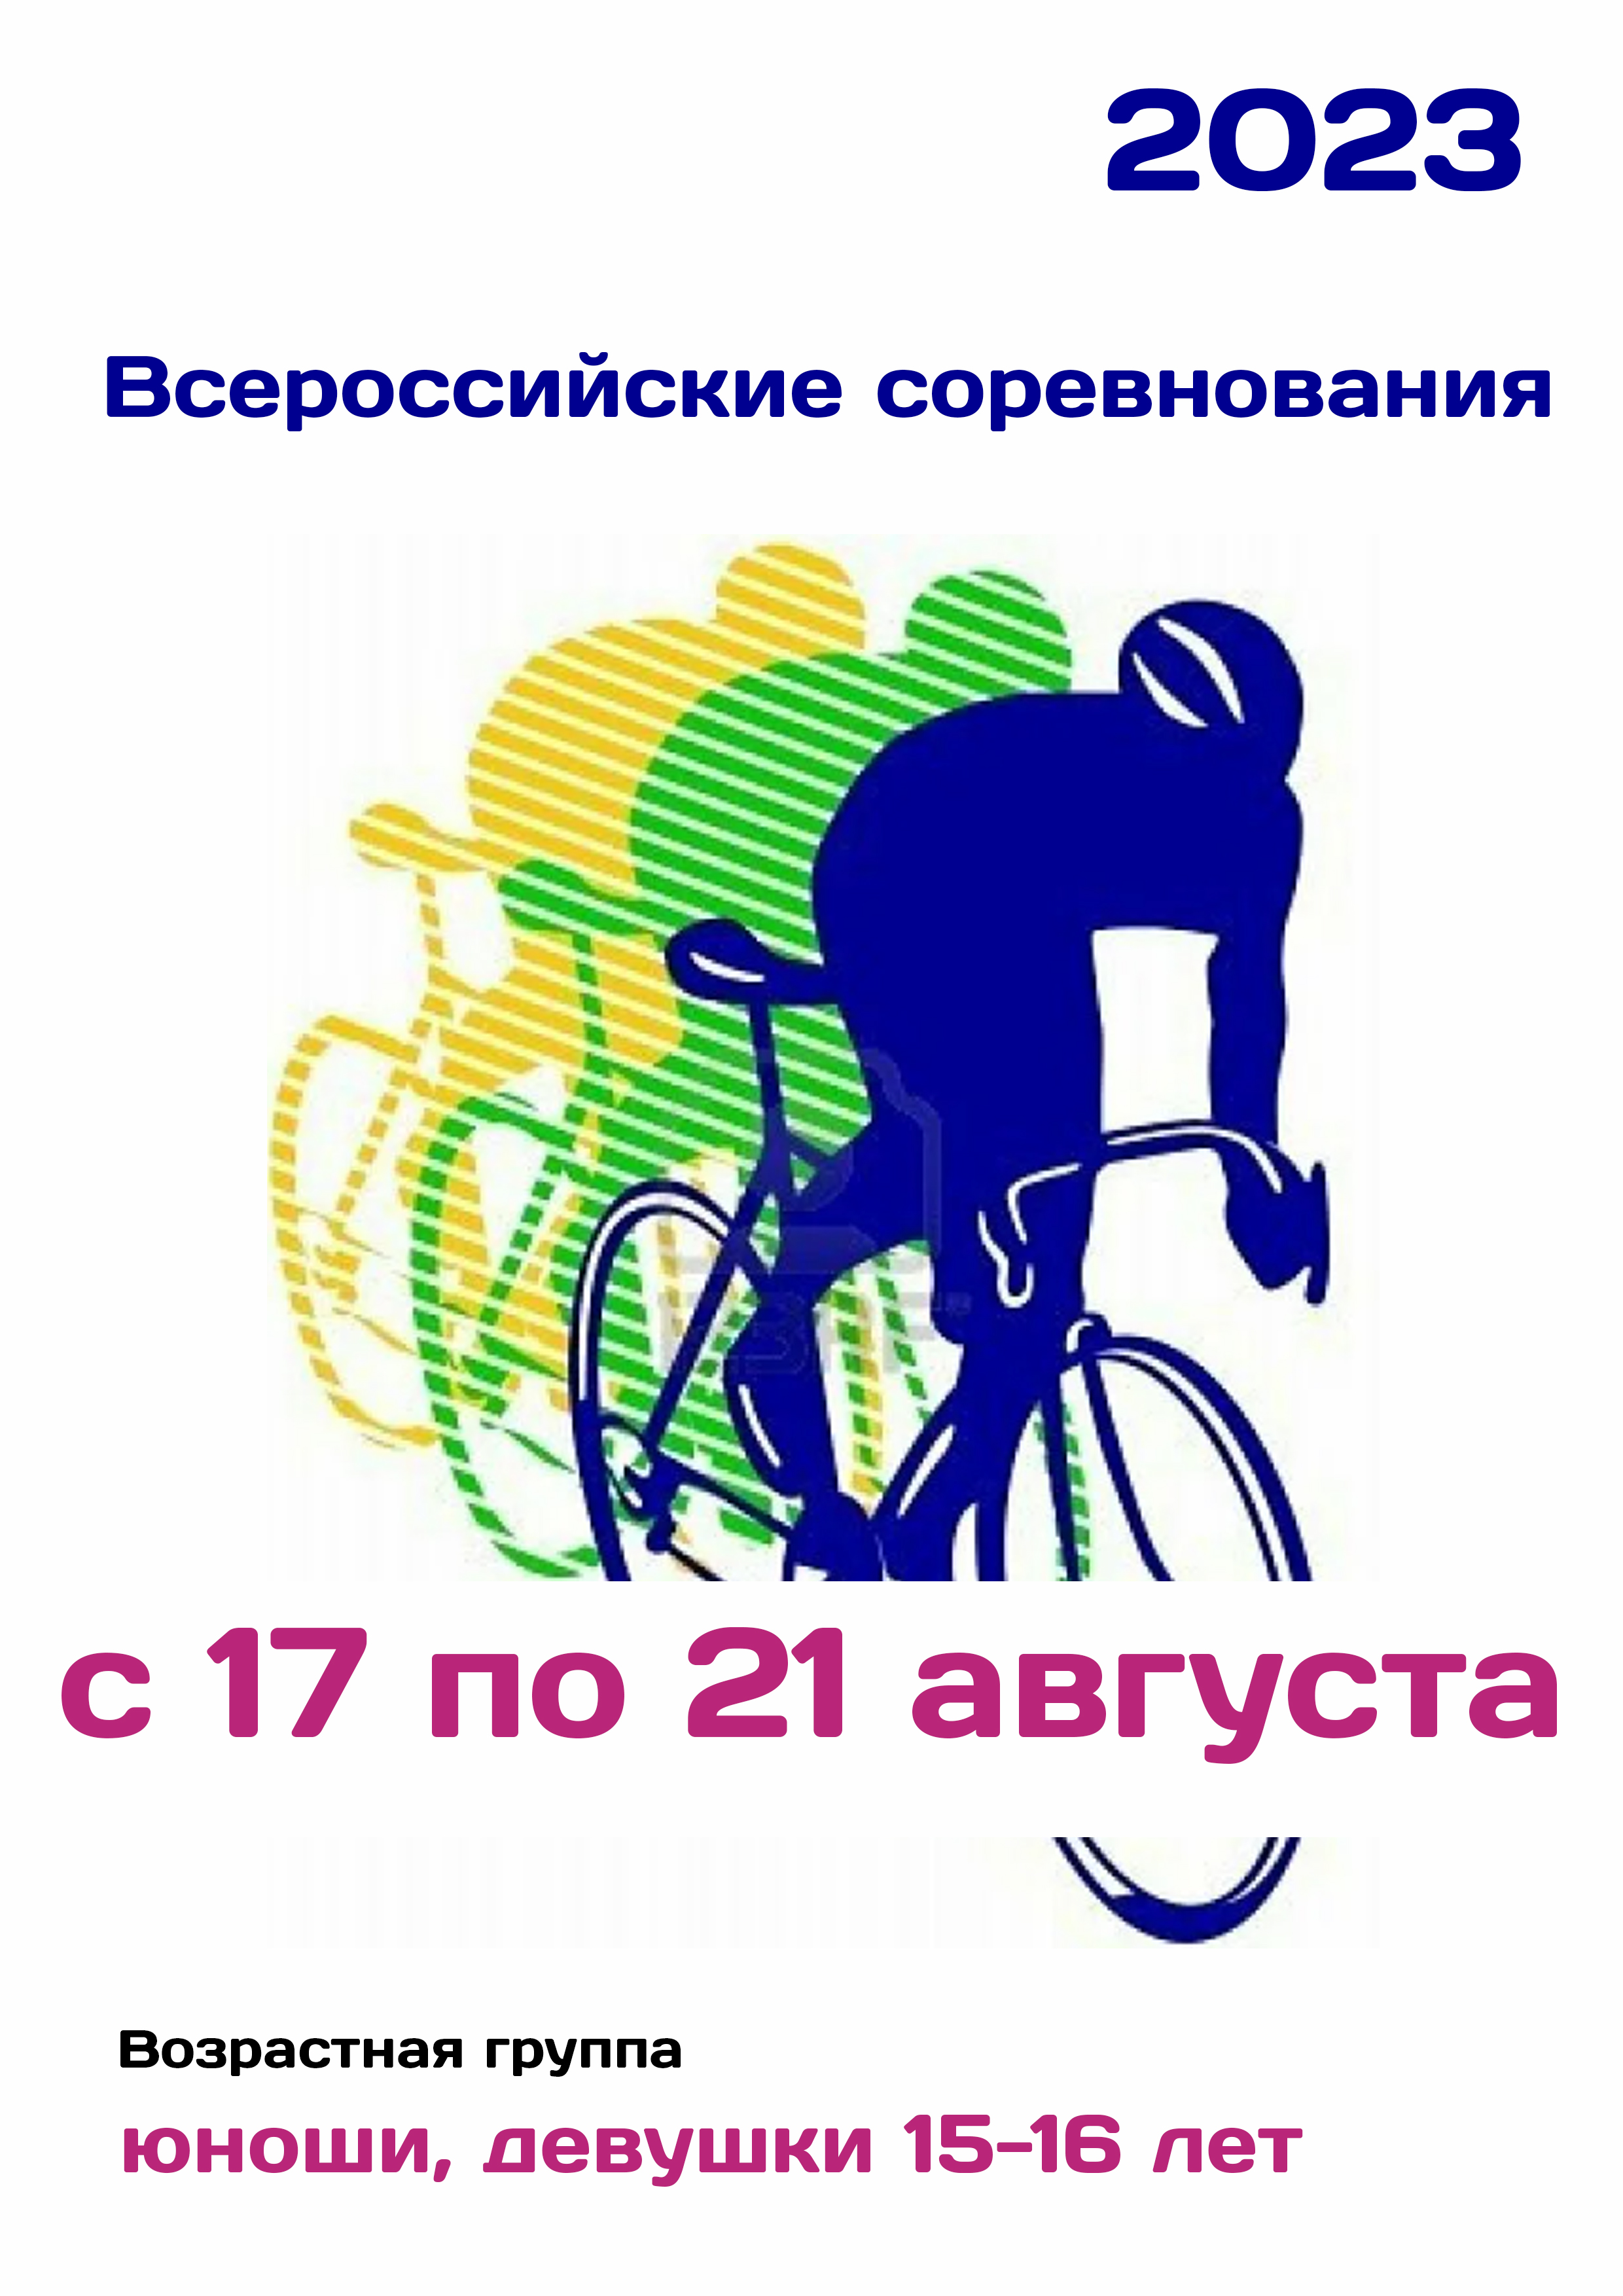 Всероссийские соревнования по велоспорту 17  مرداد
 2023  سال
 